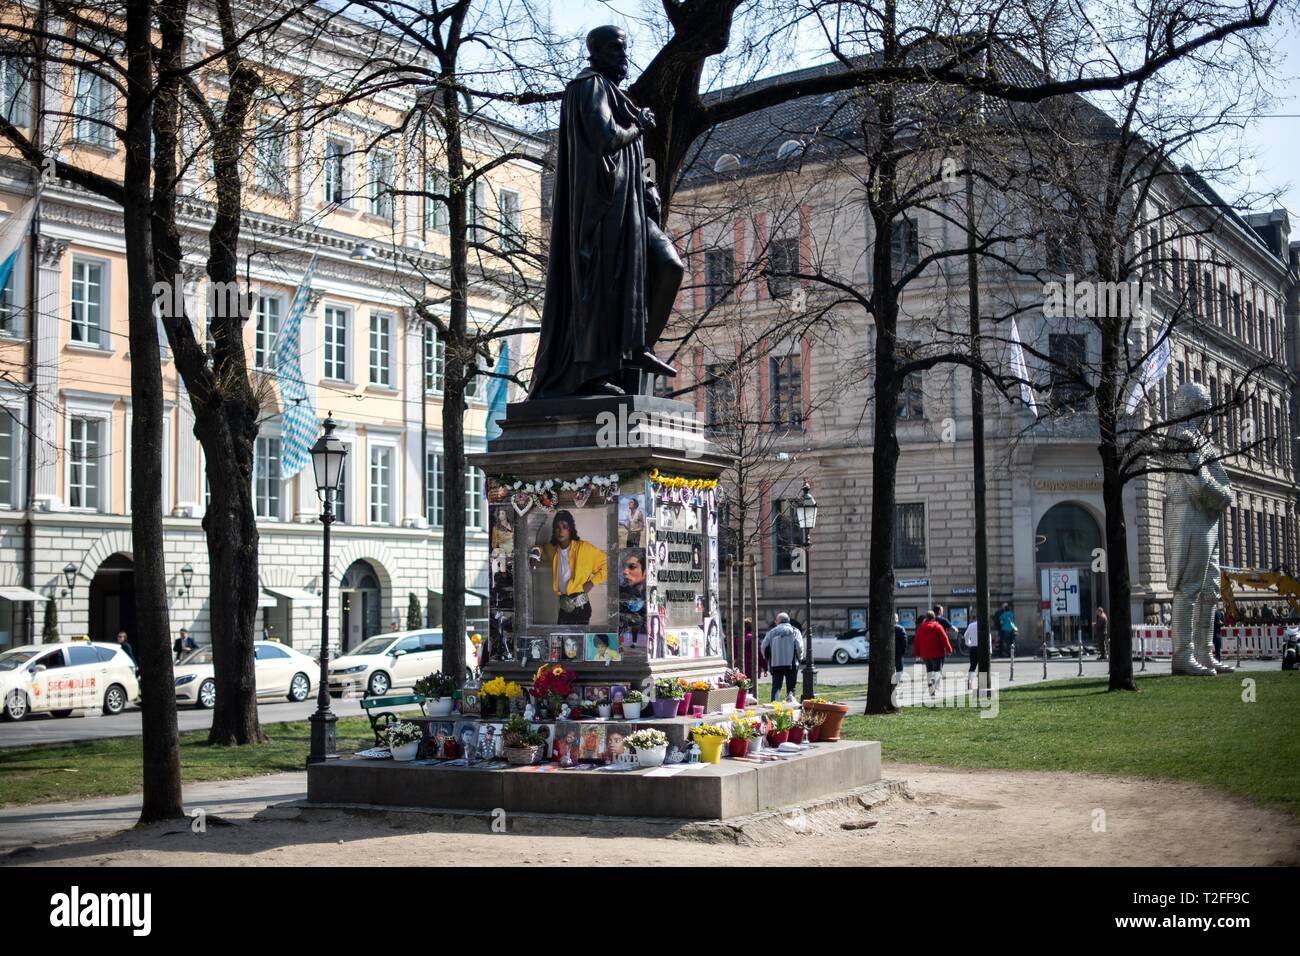 El 01 de abril de 2019, el Estado federado de Baviera, Múnich: El pedestal del monumento a Orlando di Lasso, de un compositor renacentista y Kapellmeister, que fue convertido en un monumento de Michael Jackson delante de la Corte bávara, está rodeado por velas y fotografías. (Dpa-Michael-Jackson 'Brisante Doku viene a Alemania' desde el 02.04.2019) Foto: Sina Schuldt/dpa Foto de stock